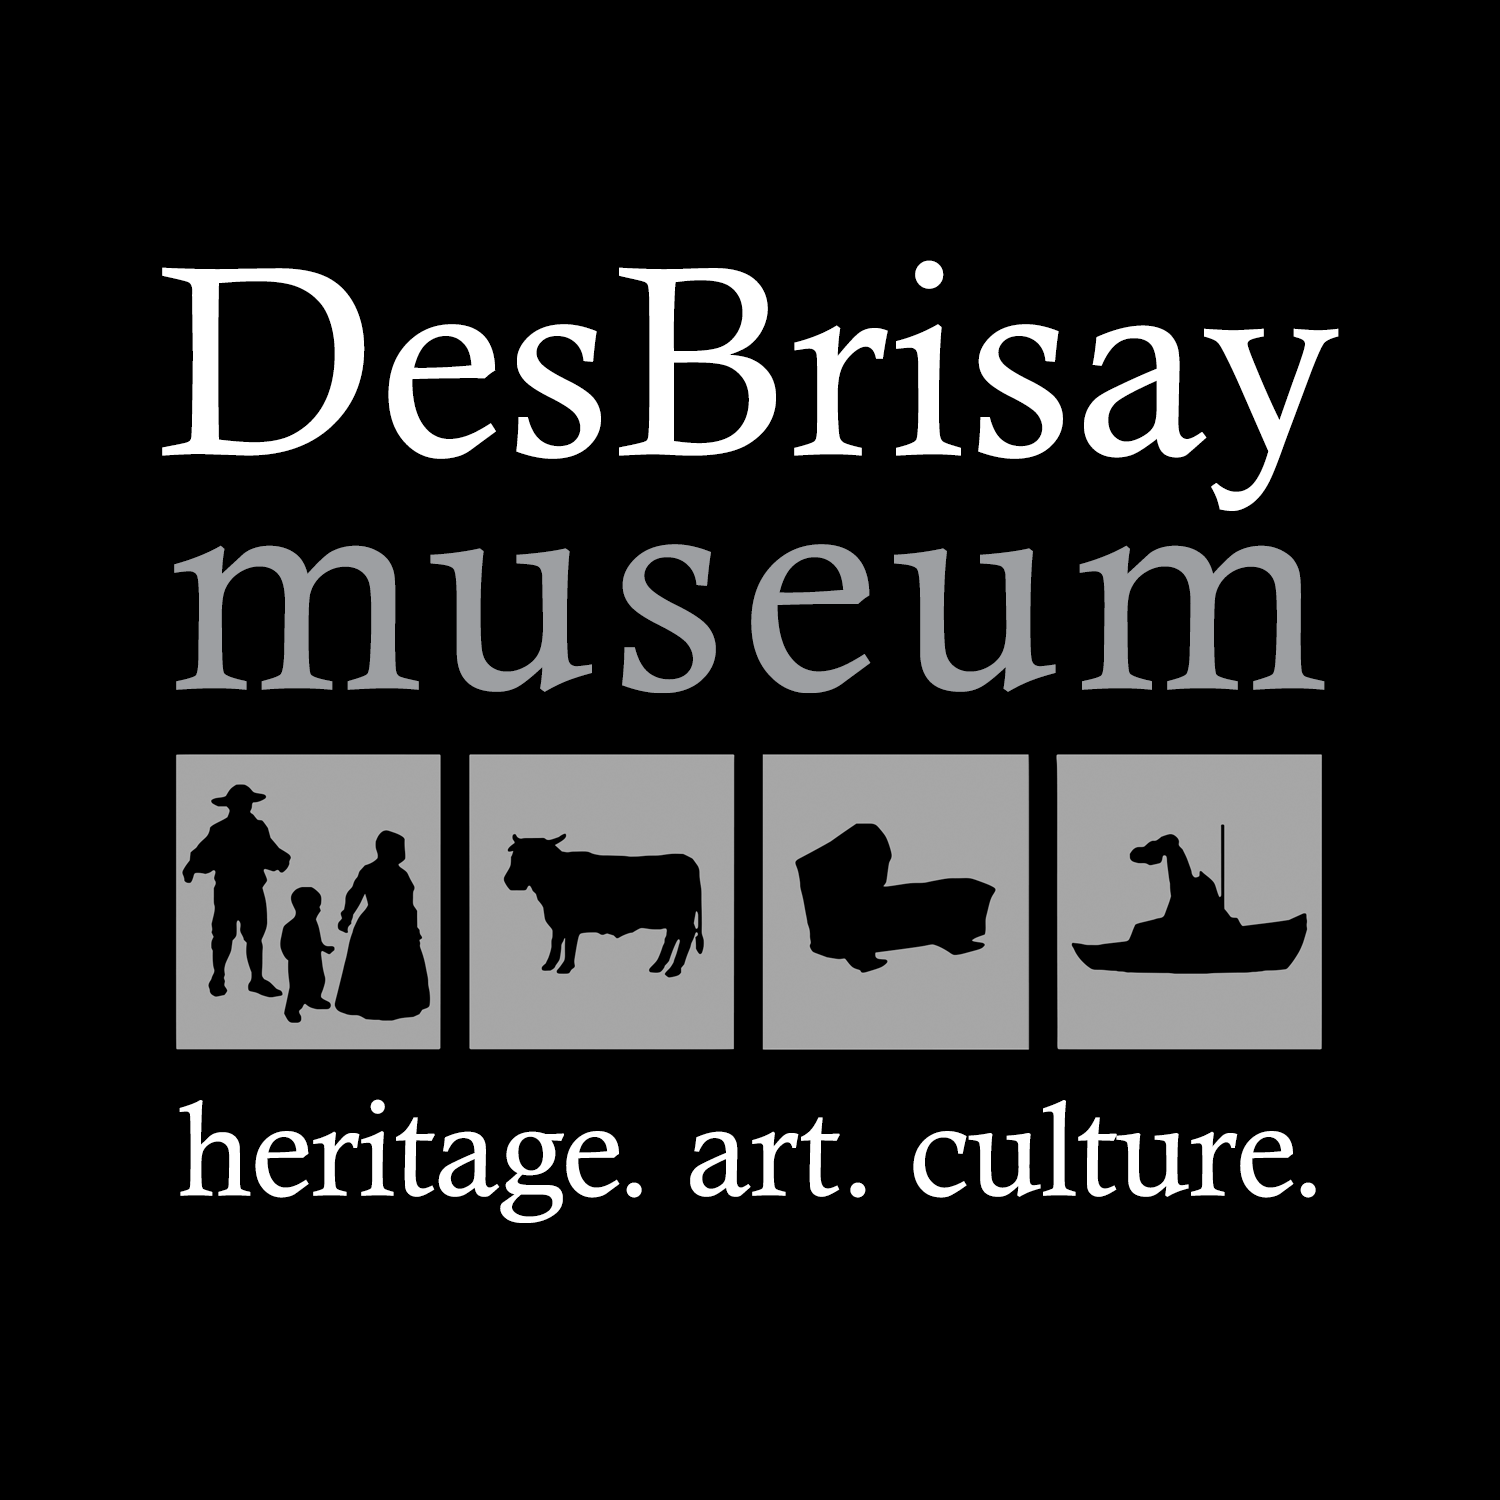 DesBrisay Museum